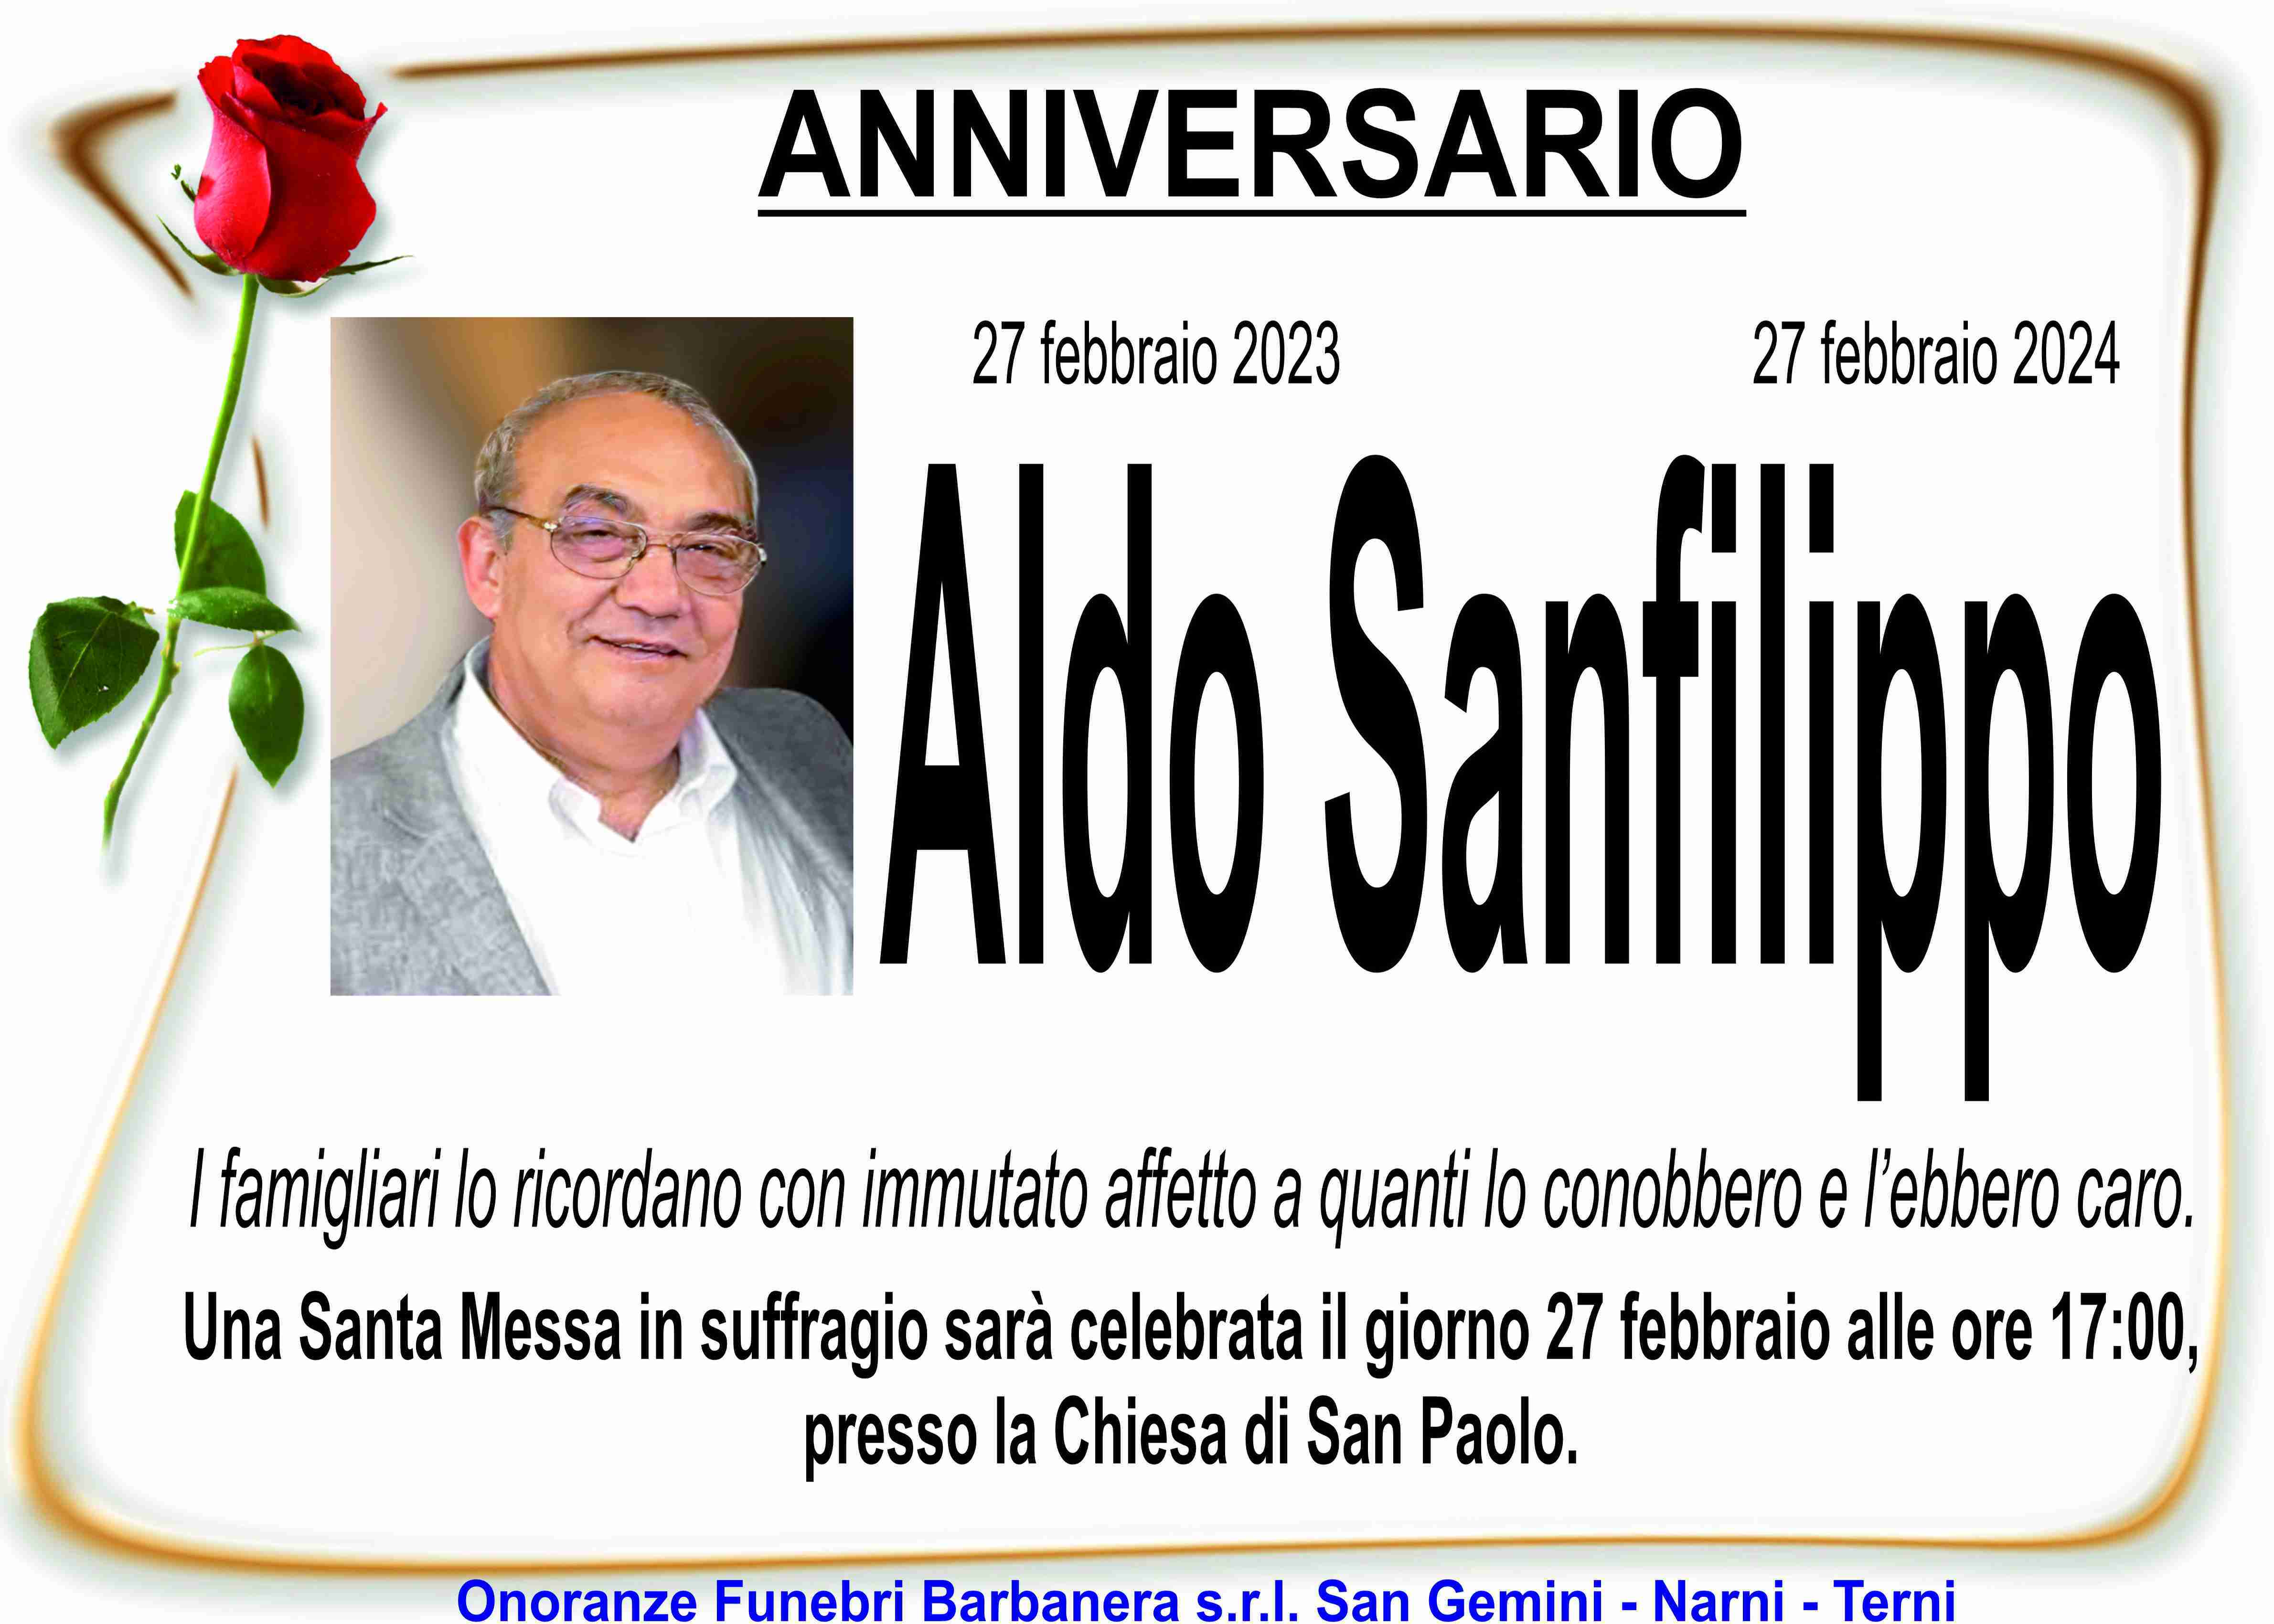 Aldo Sanfilippo